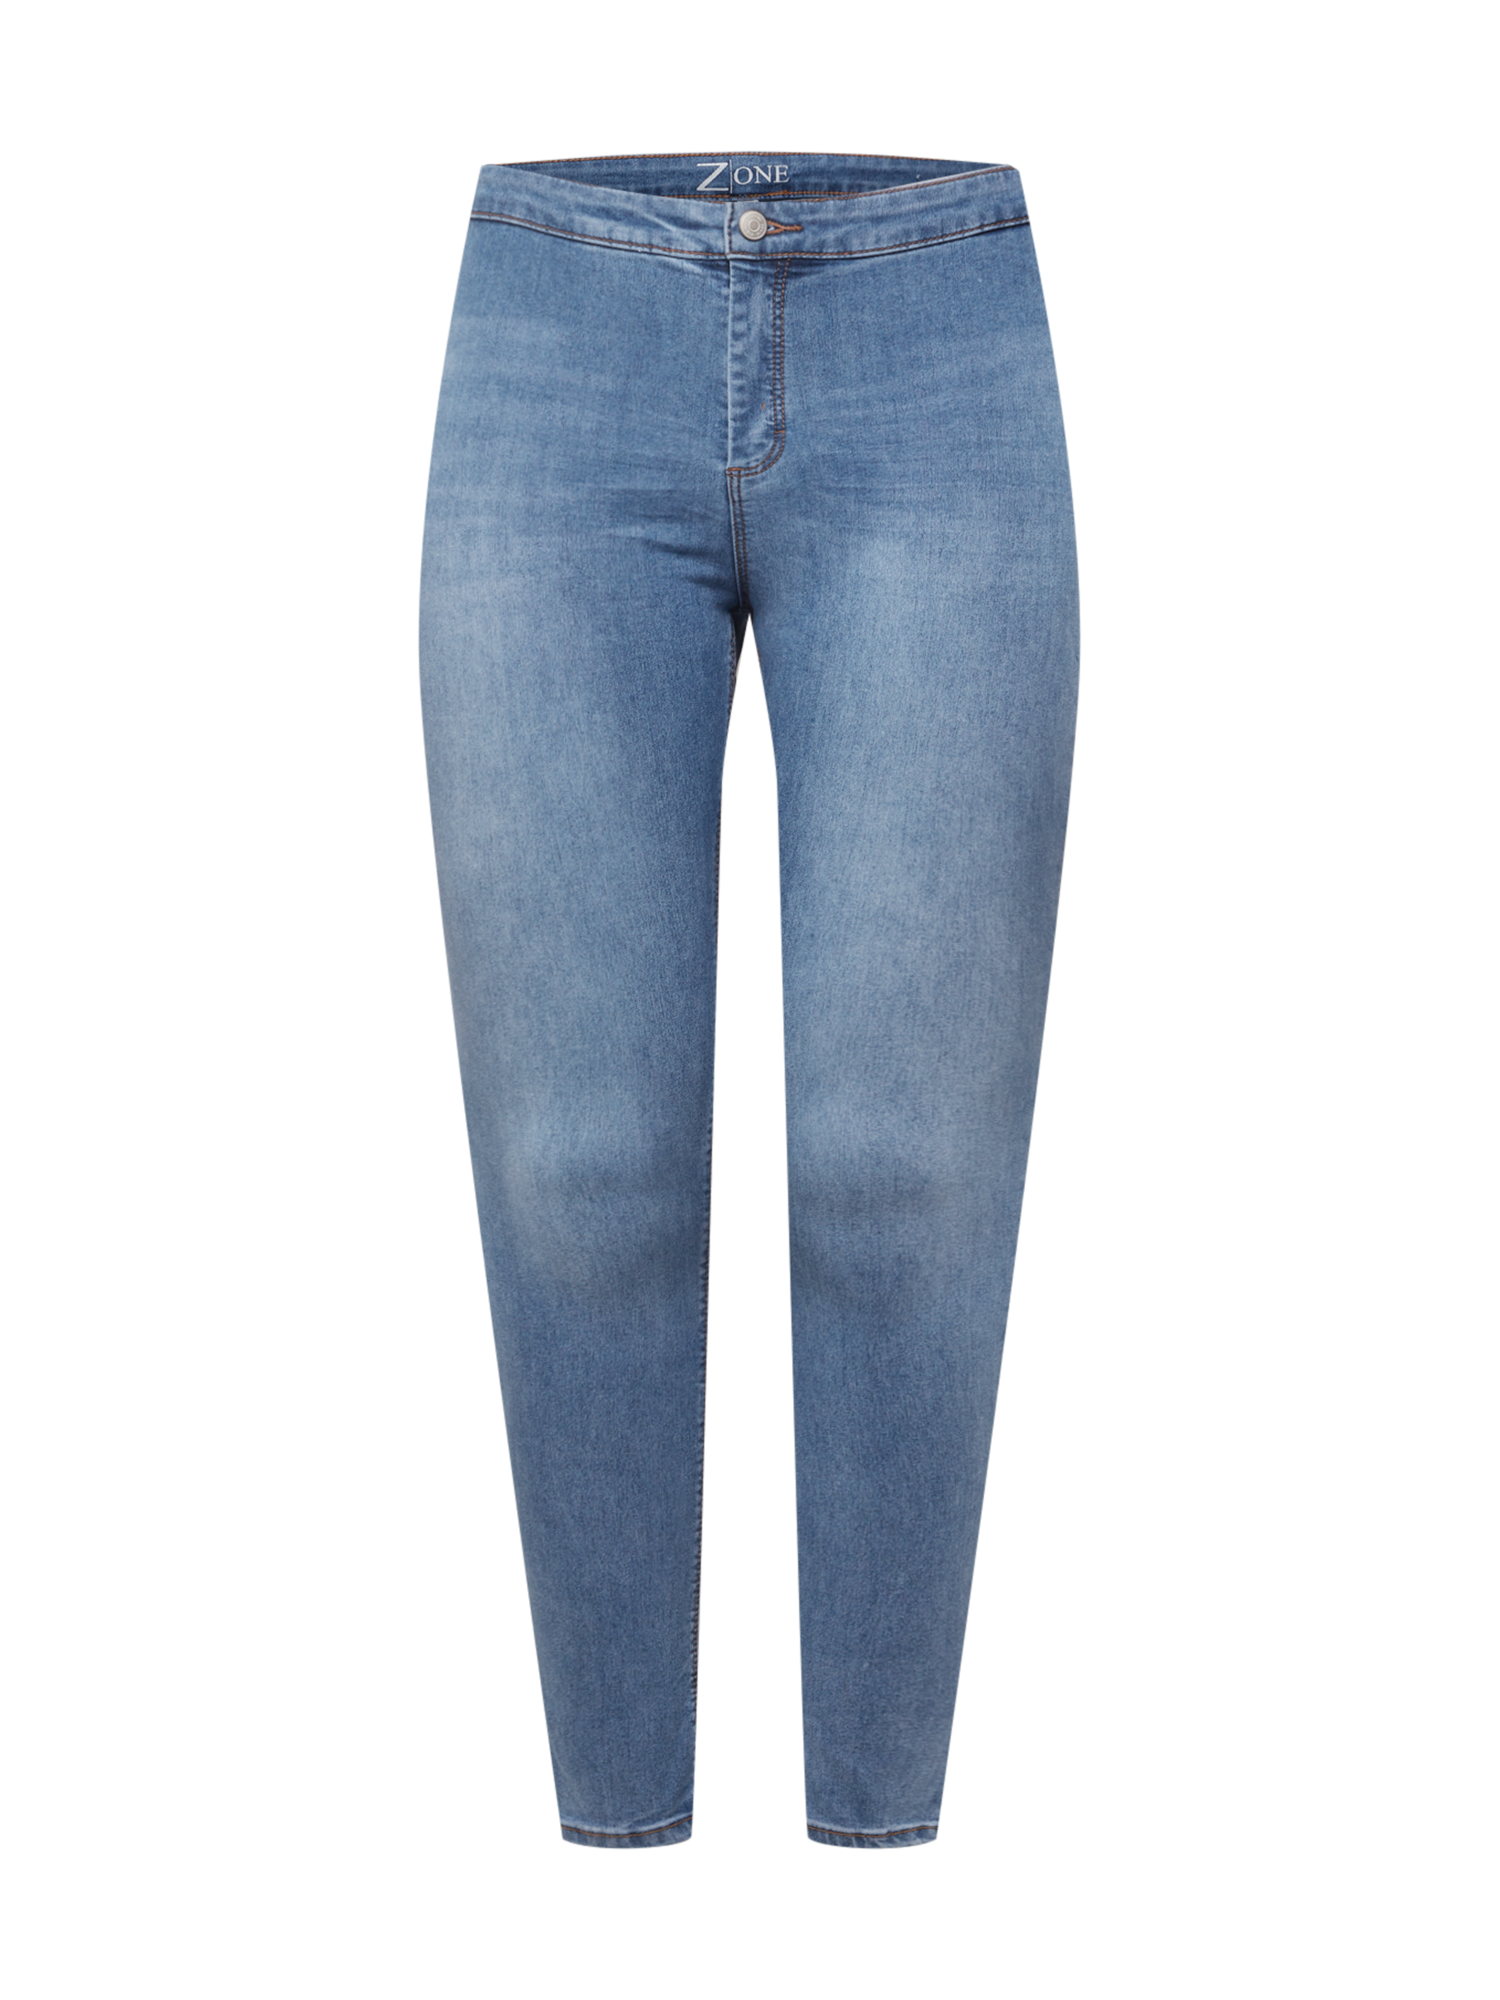 Abbigliamento Donna Z-One Jeans Juno in Blu 